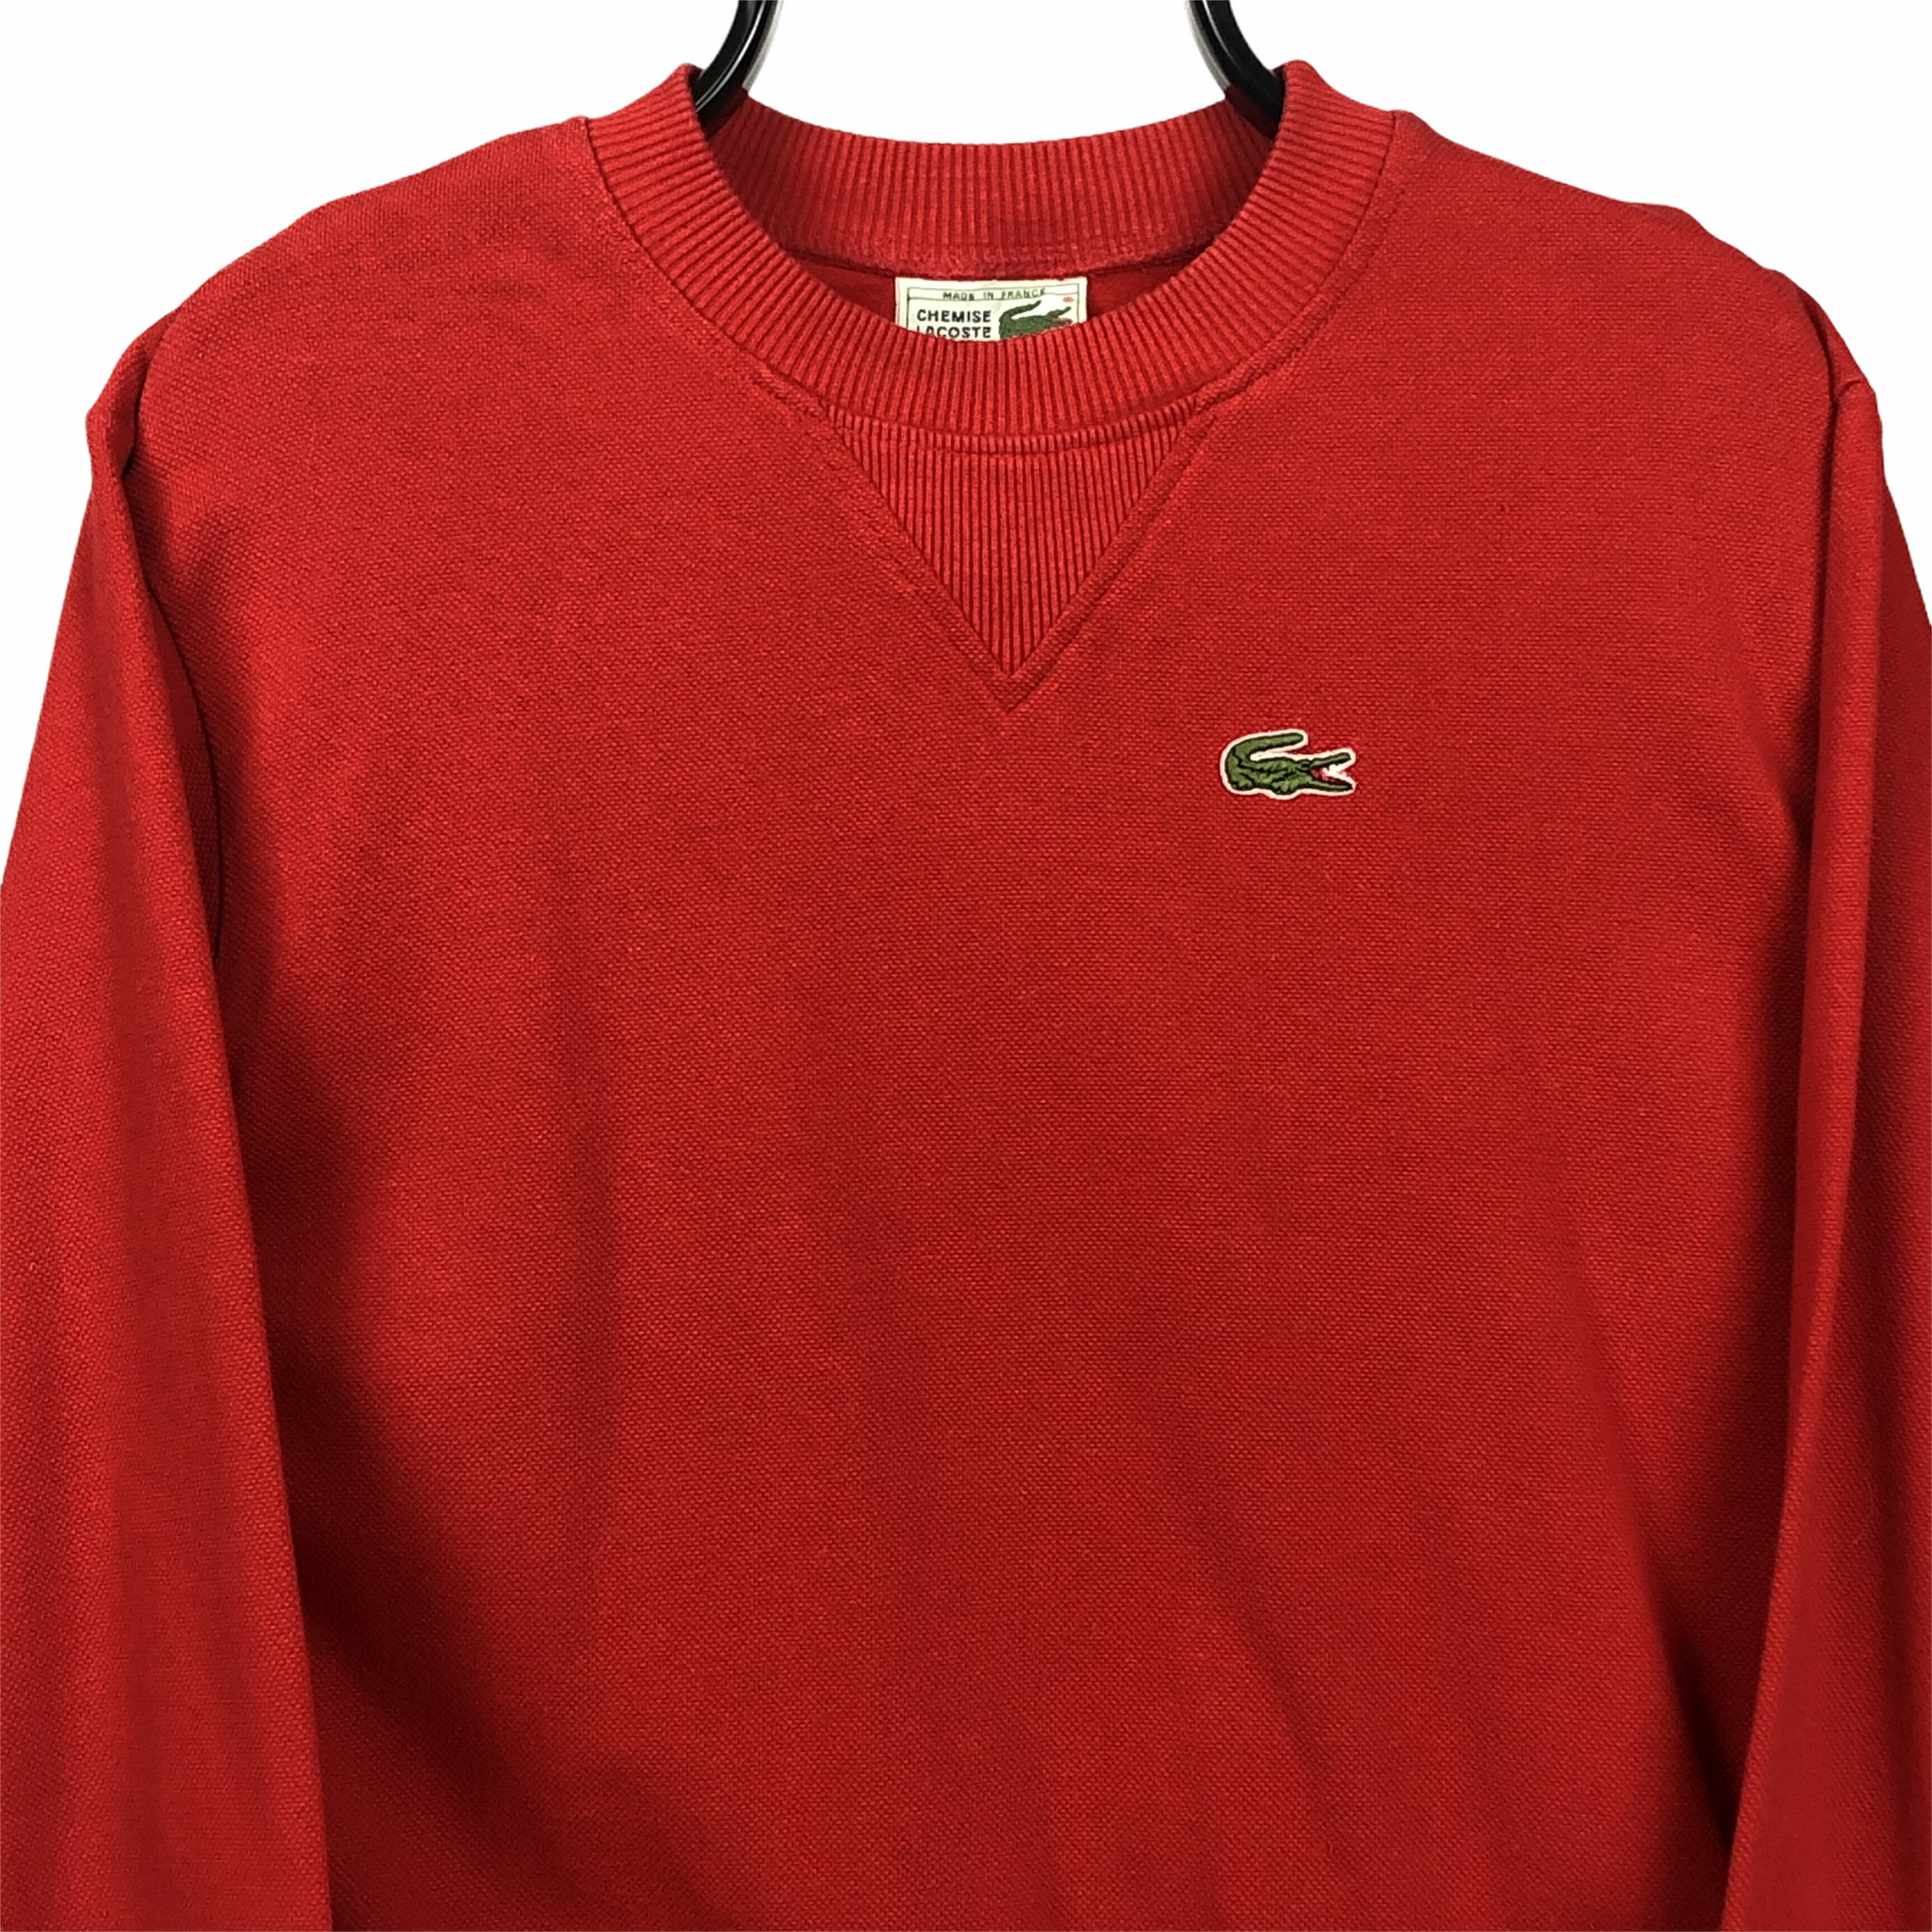 Lacoste Sweatshirt in Red - Men's XS/Women's Medium